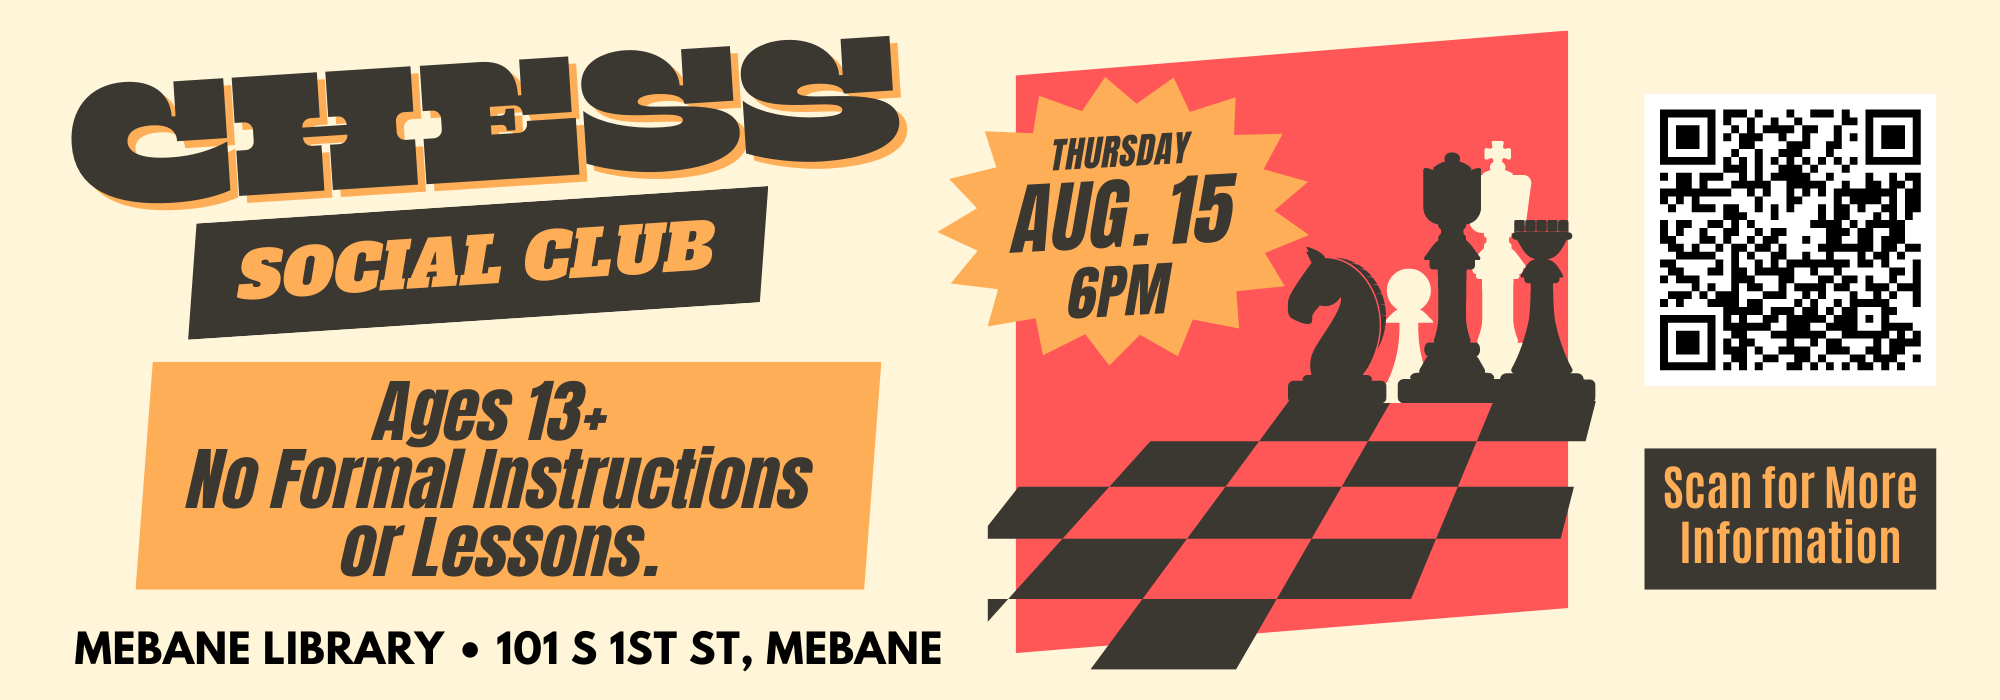 8.15 at 6 pm - Chess Social Club at Mebane